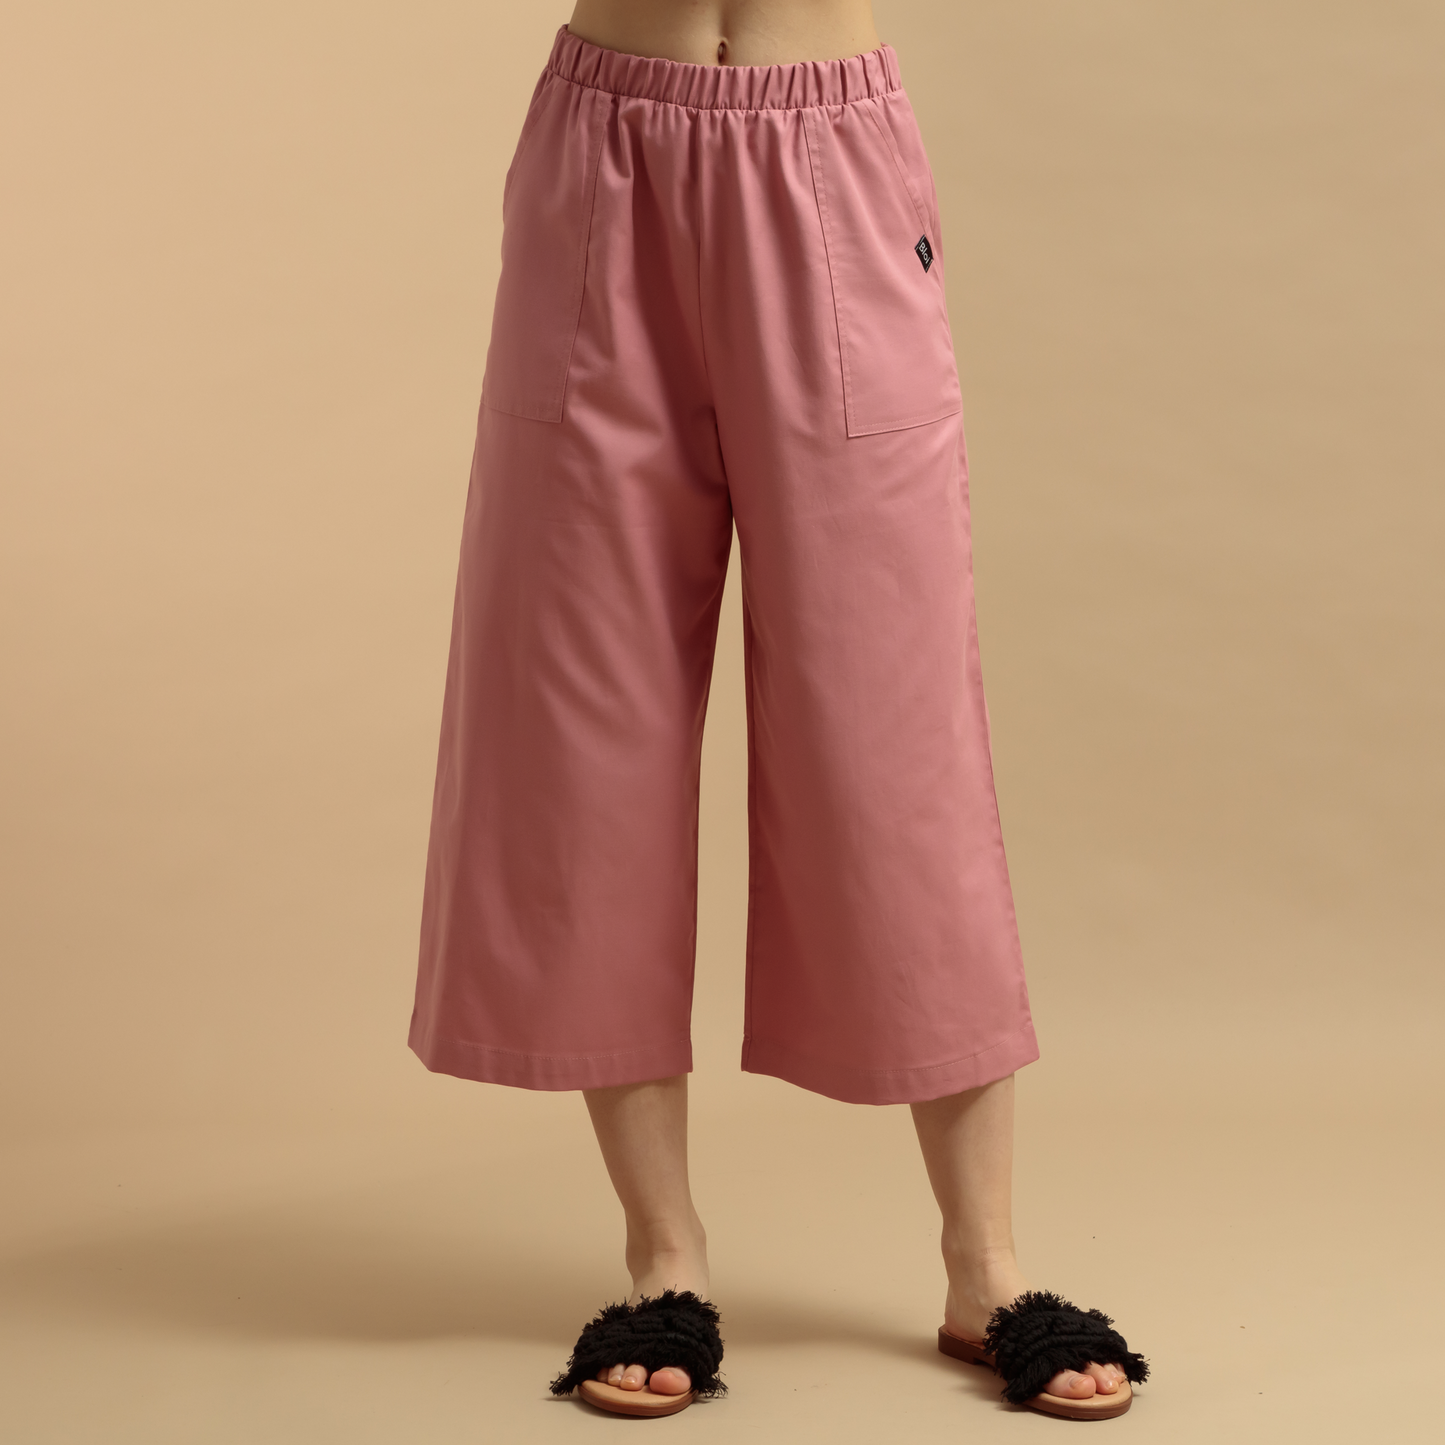 Pantalón rosa YARROW